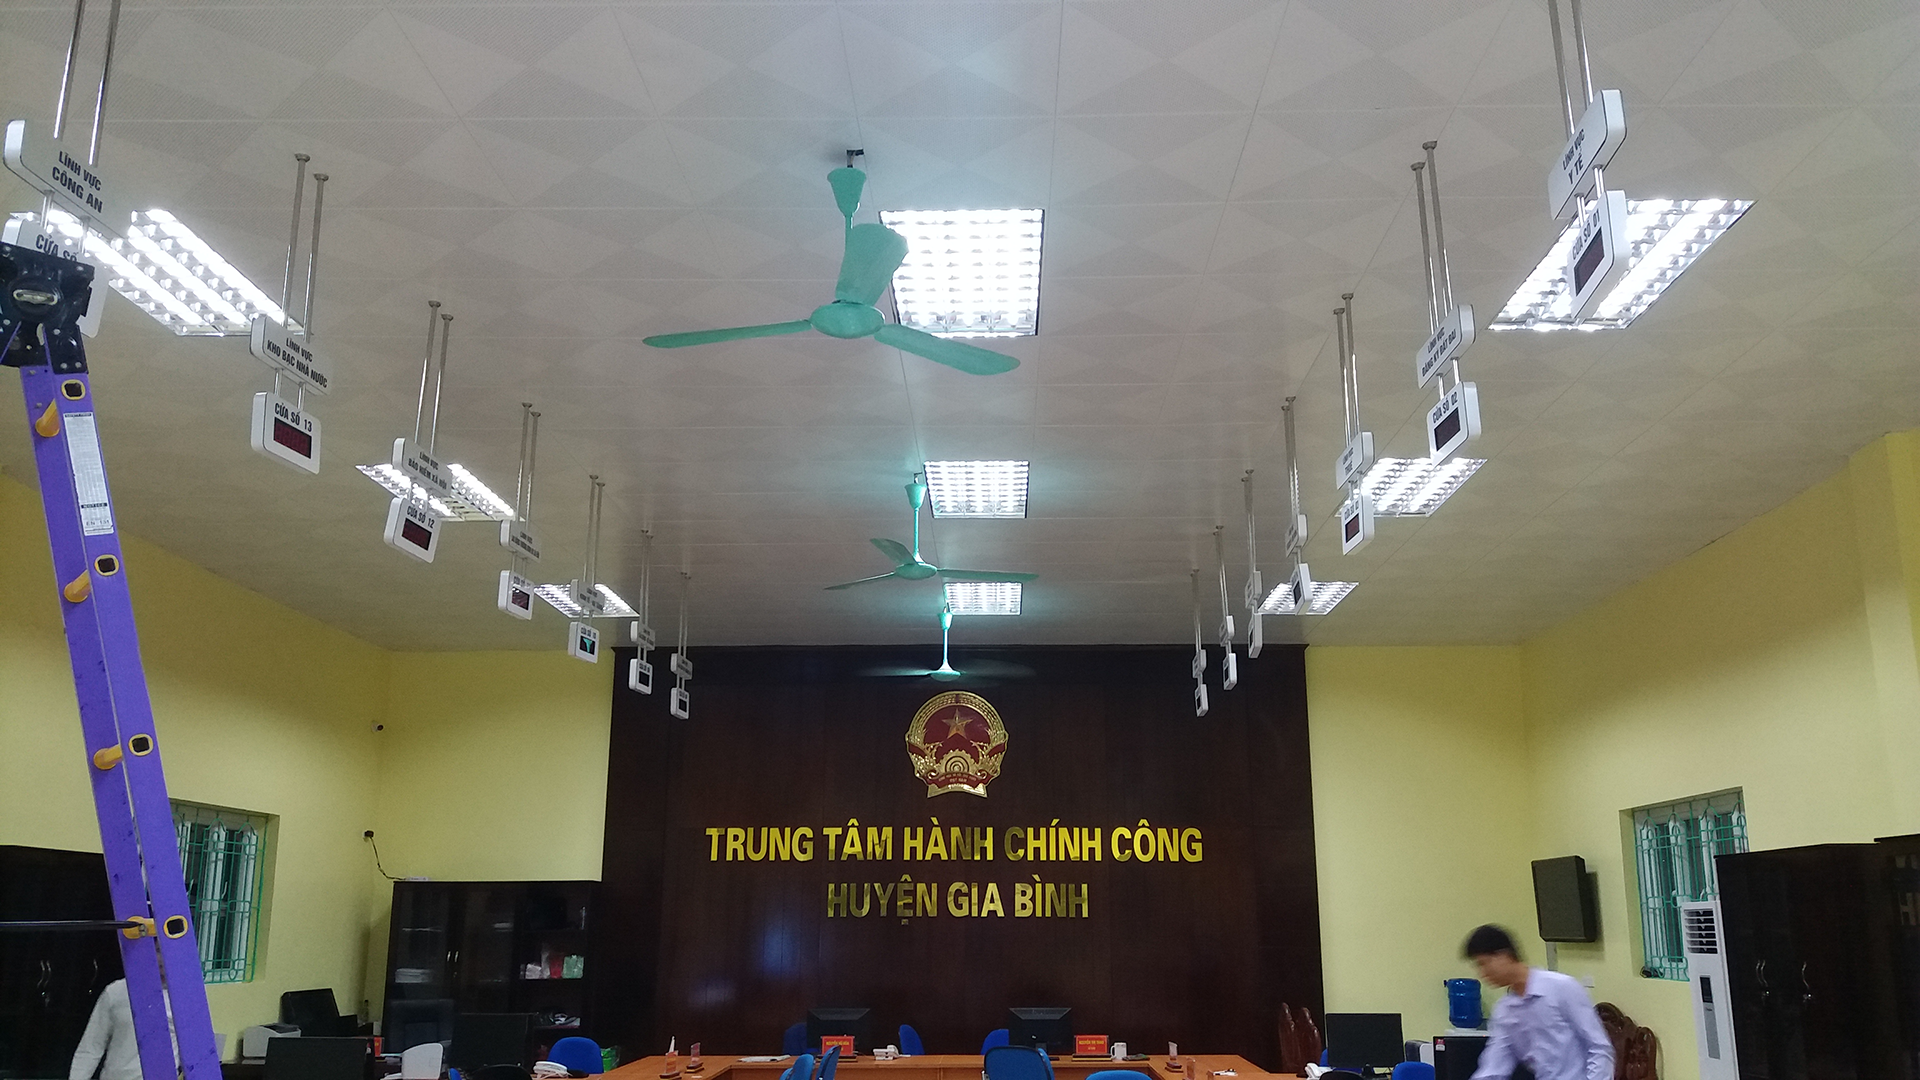 Trung tâm hành chính công huyện Gia Bình - Bắc Ninh